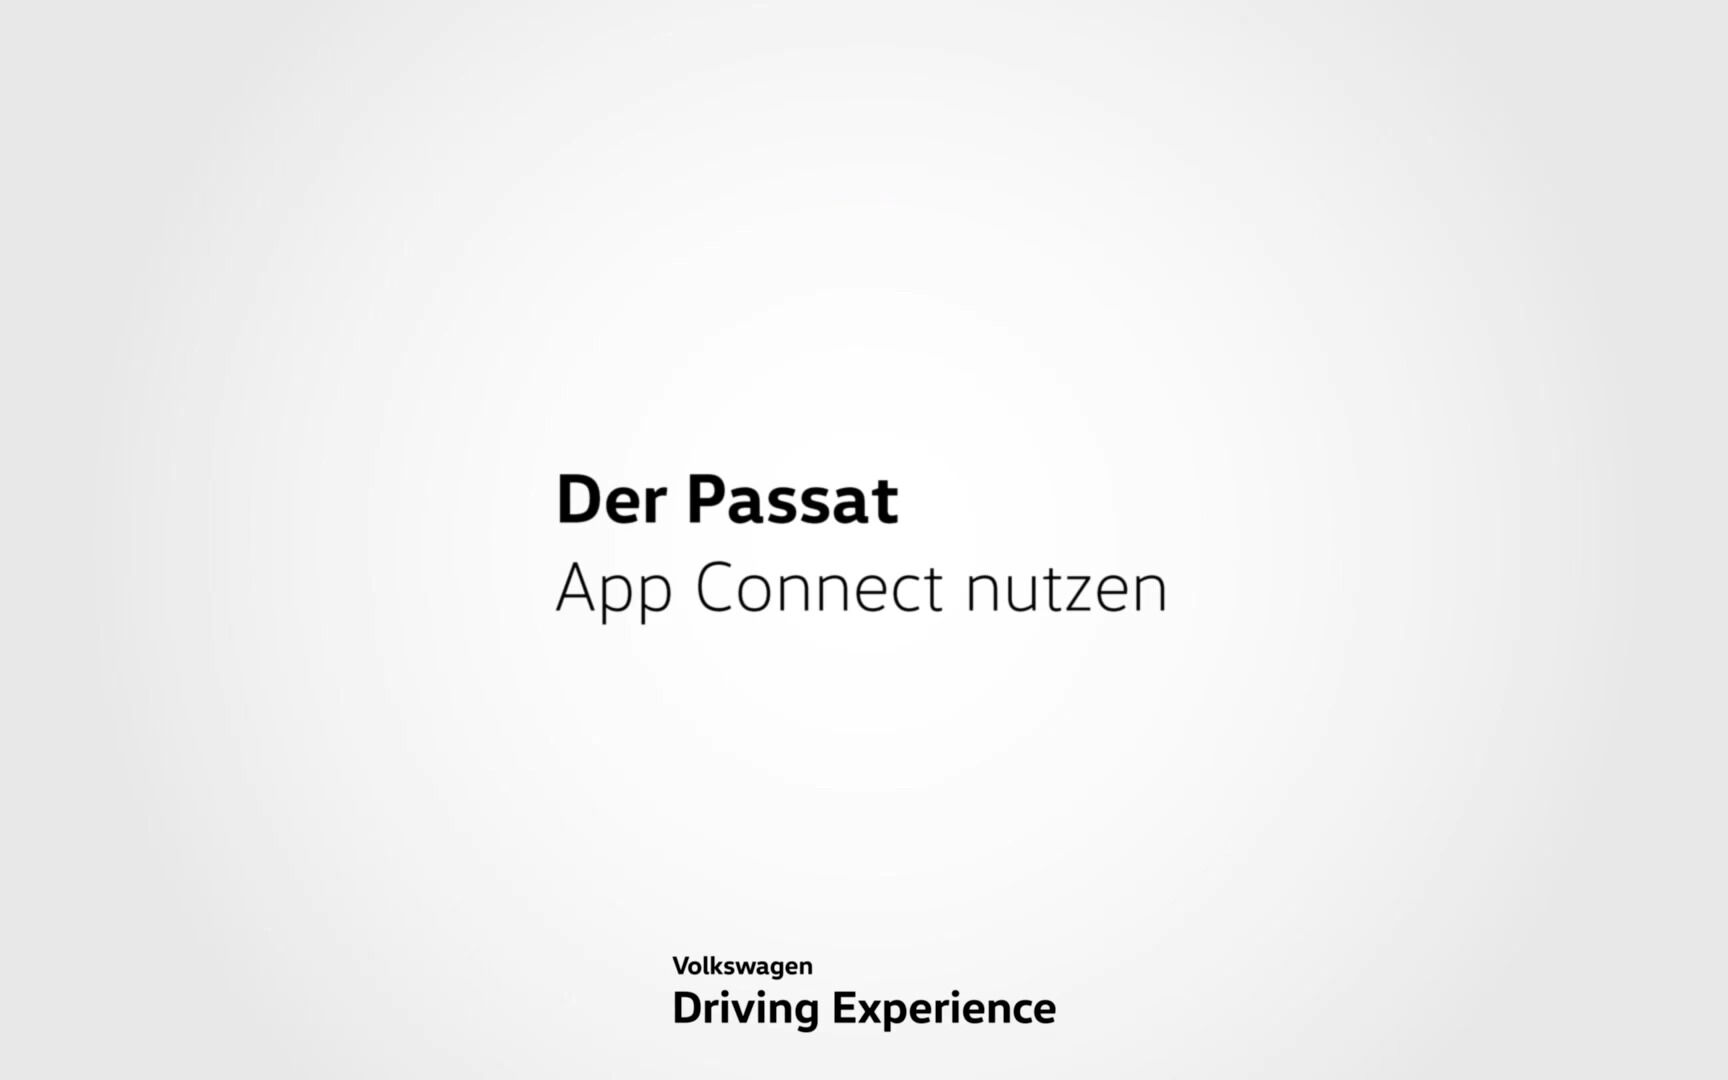 App Connect nutzen - Volkswagen